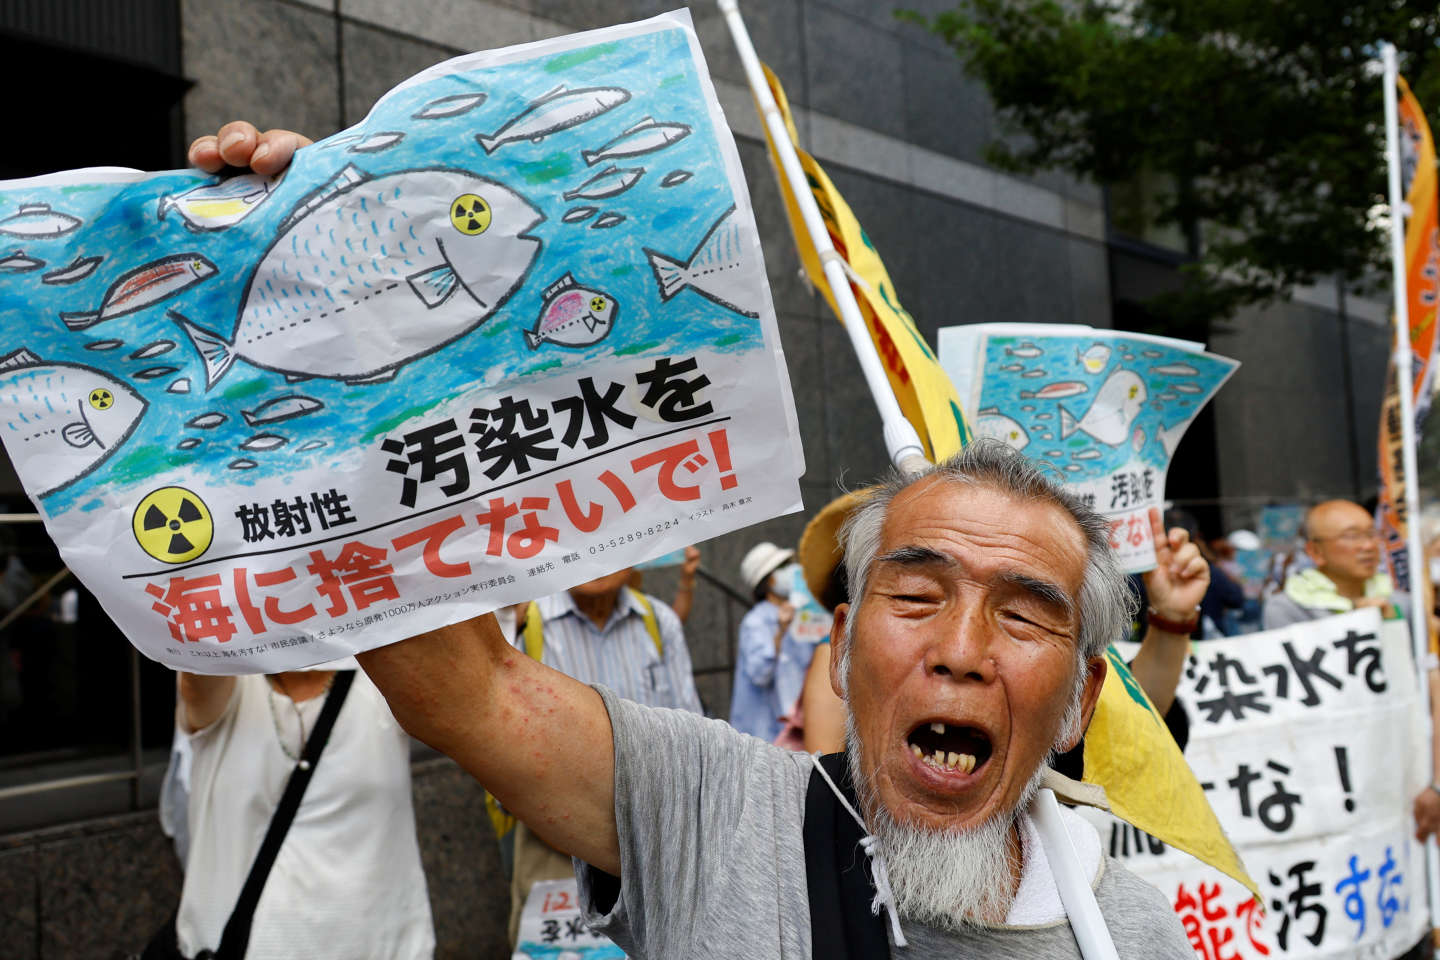 Rejet de l’eau de Fukushima : le Japon dénonce un harcèlement chinois « extrêmement regrettable »